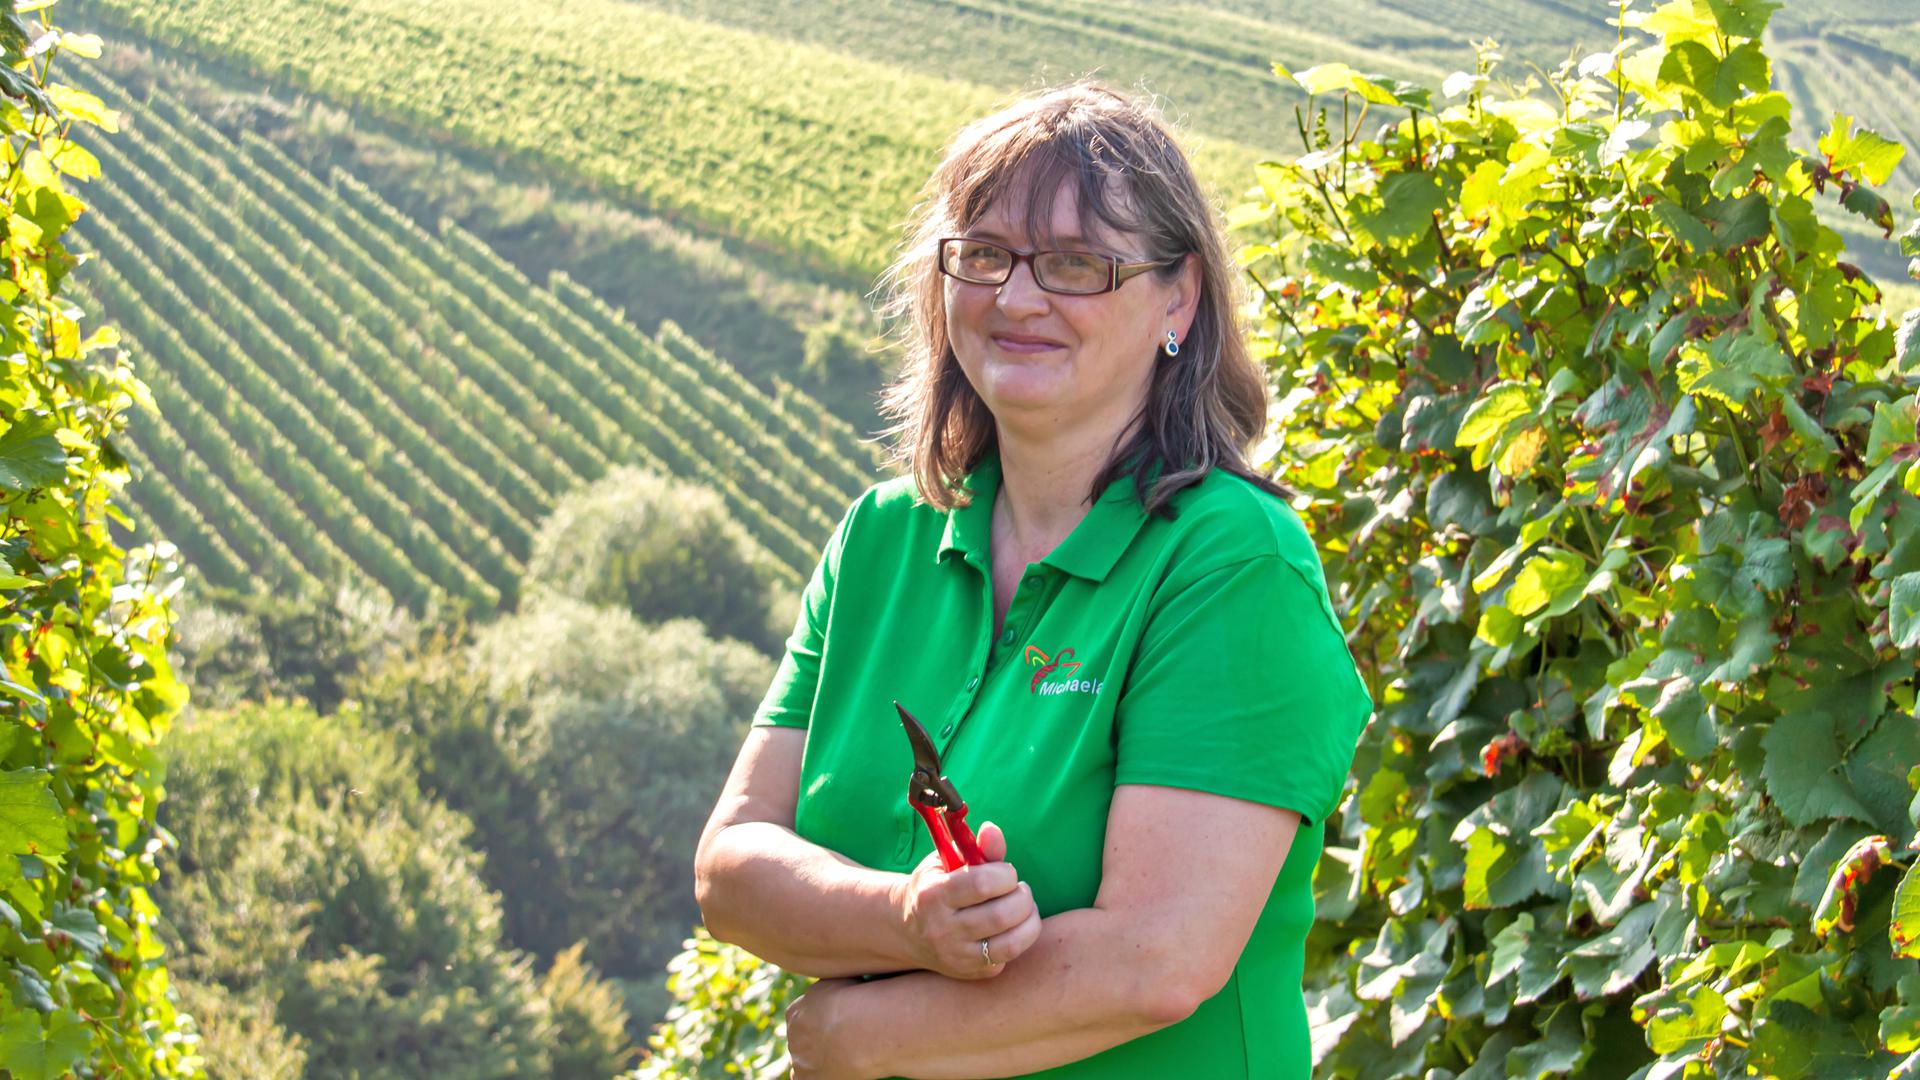 Michaela Bross ist Vorsitzende der Landfrauen in Oberachern. Gemeinsam mit einigen ihrer Mitstreiterinnen möchte sie nun den befreundeten Landfrauen im von der Hochwasser-Katastrophe betroffenen Ahrweiler bei der Weinlese helfen. Foto: Michael Brück 